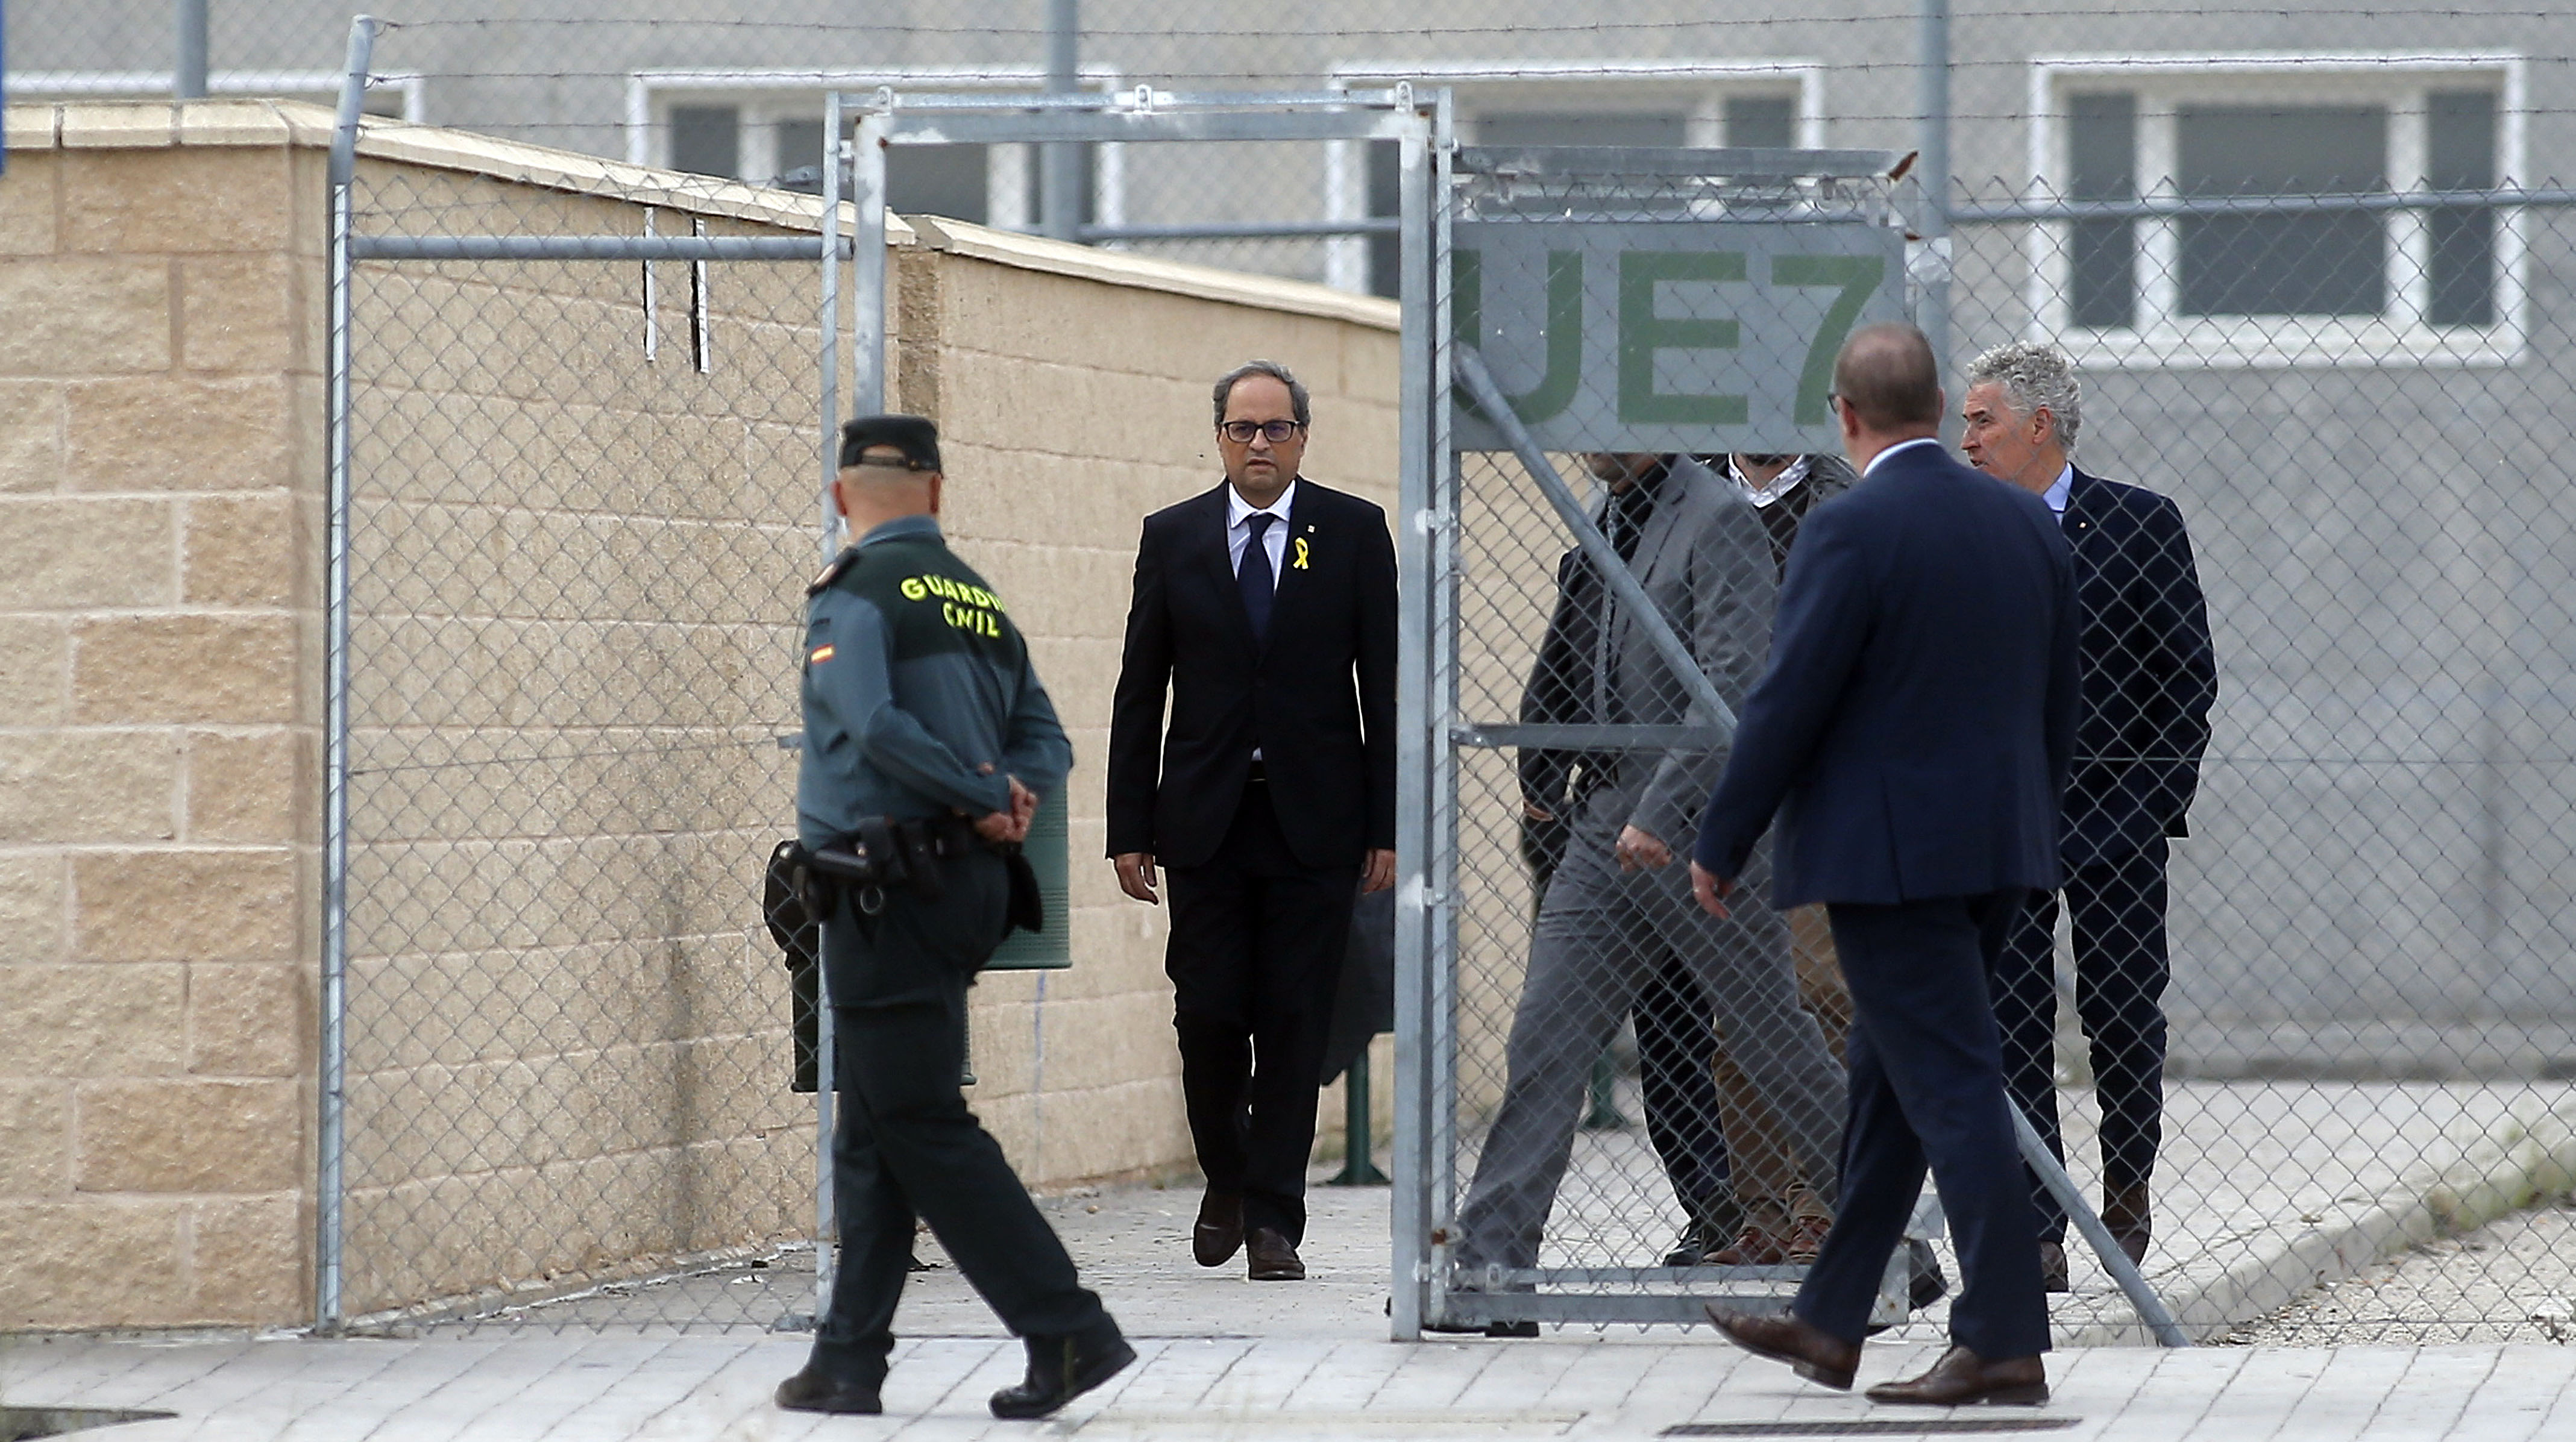  Imagen frontal del presidente Quim Torra saliendo del parking de la prisión de Estremera